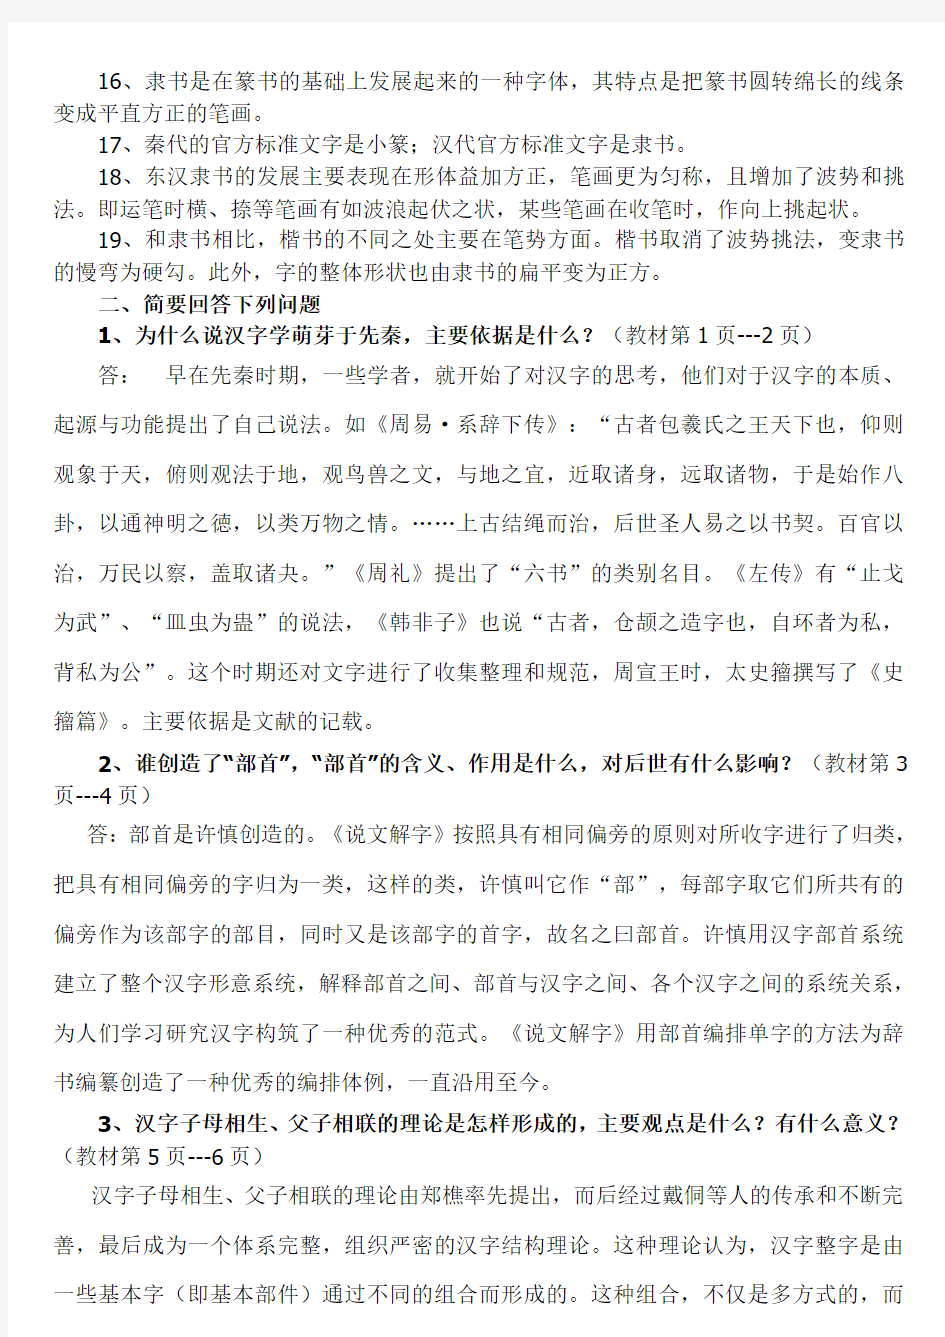 罗方健整理--2019古代汉语专题形成性考核册作业答案